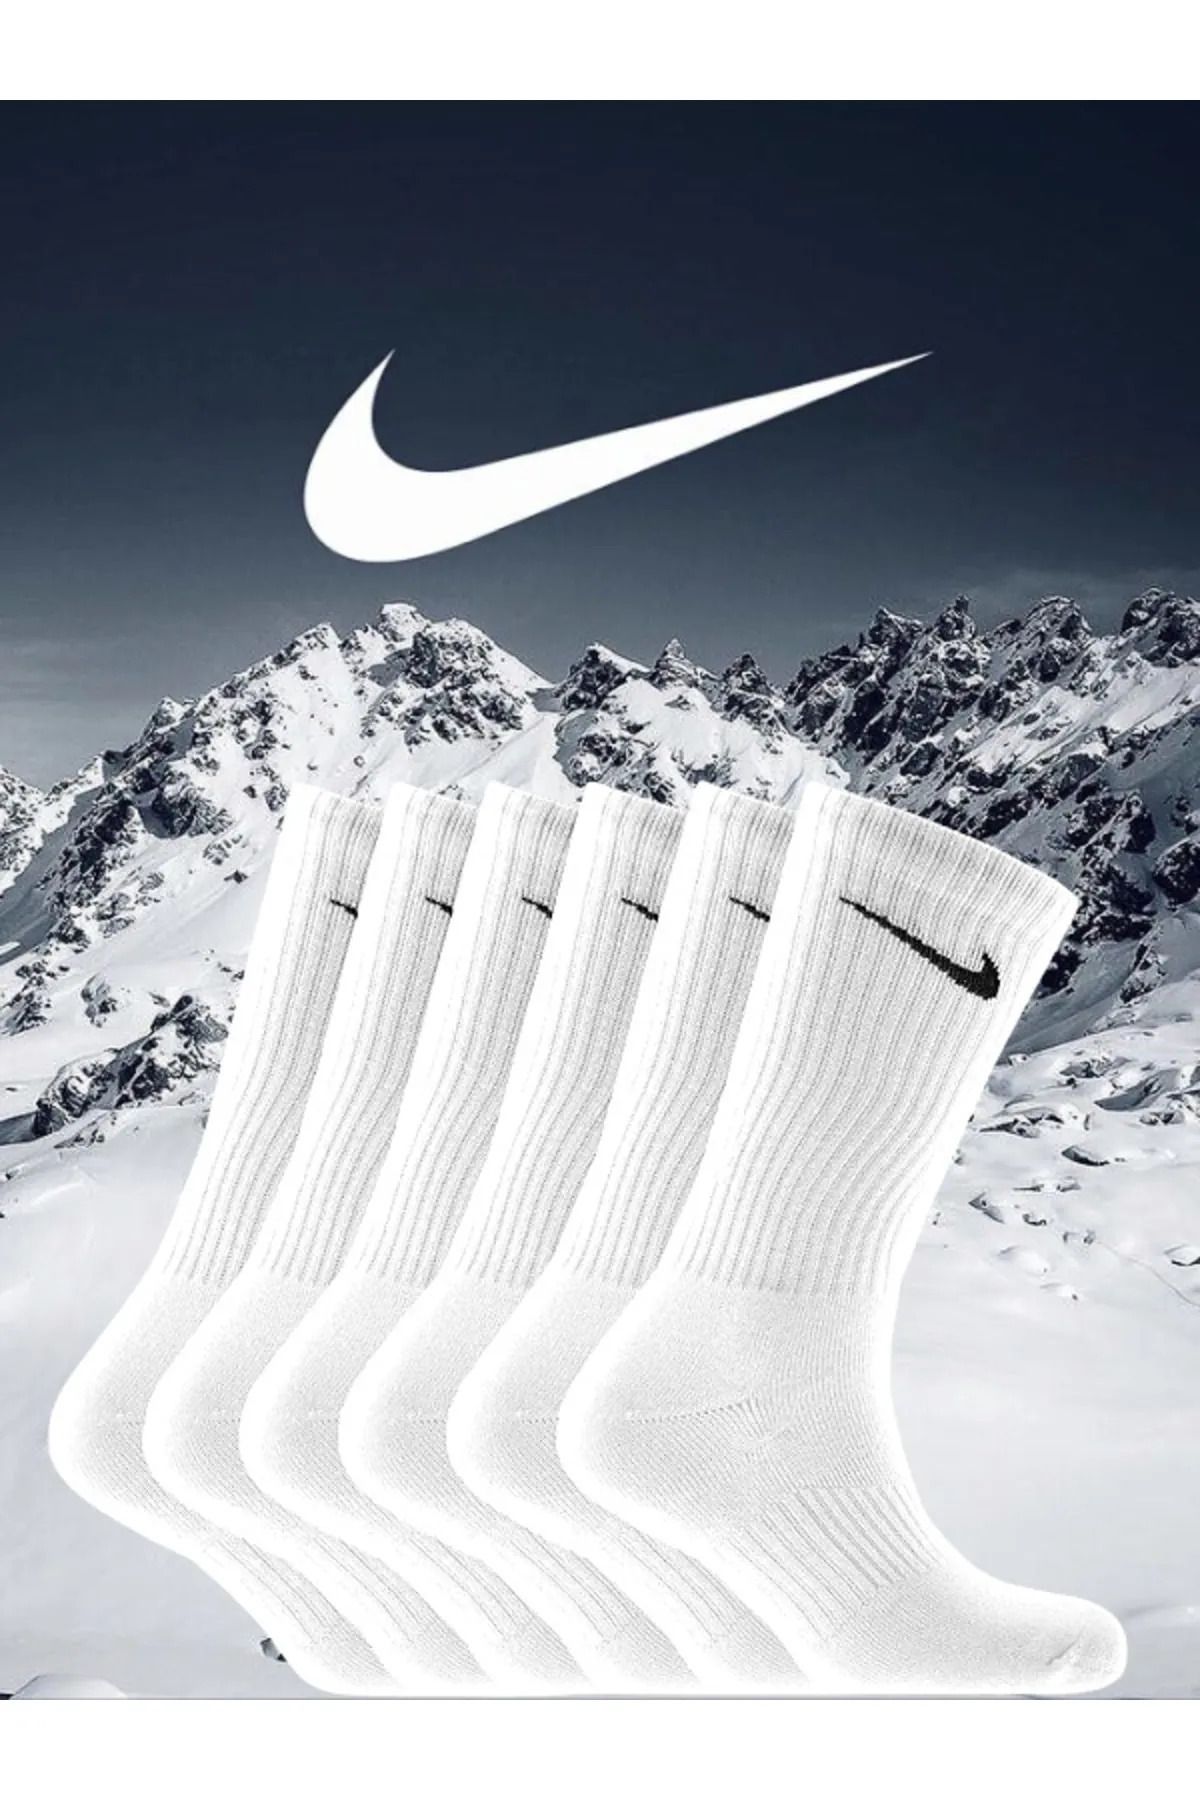 Socks Sirius 6 Çift Futbol Maç Çorabı Beyaz Uzun Antrenman Spor Tozluk Maç Çorap Set / 36-44